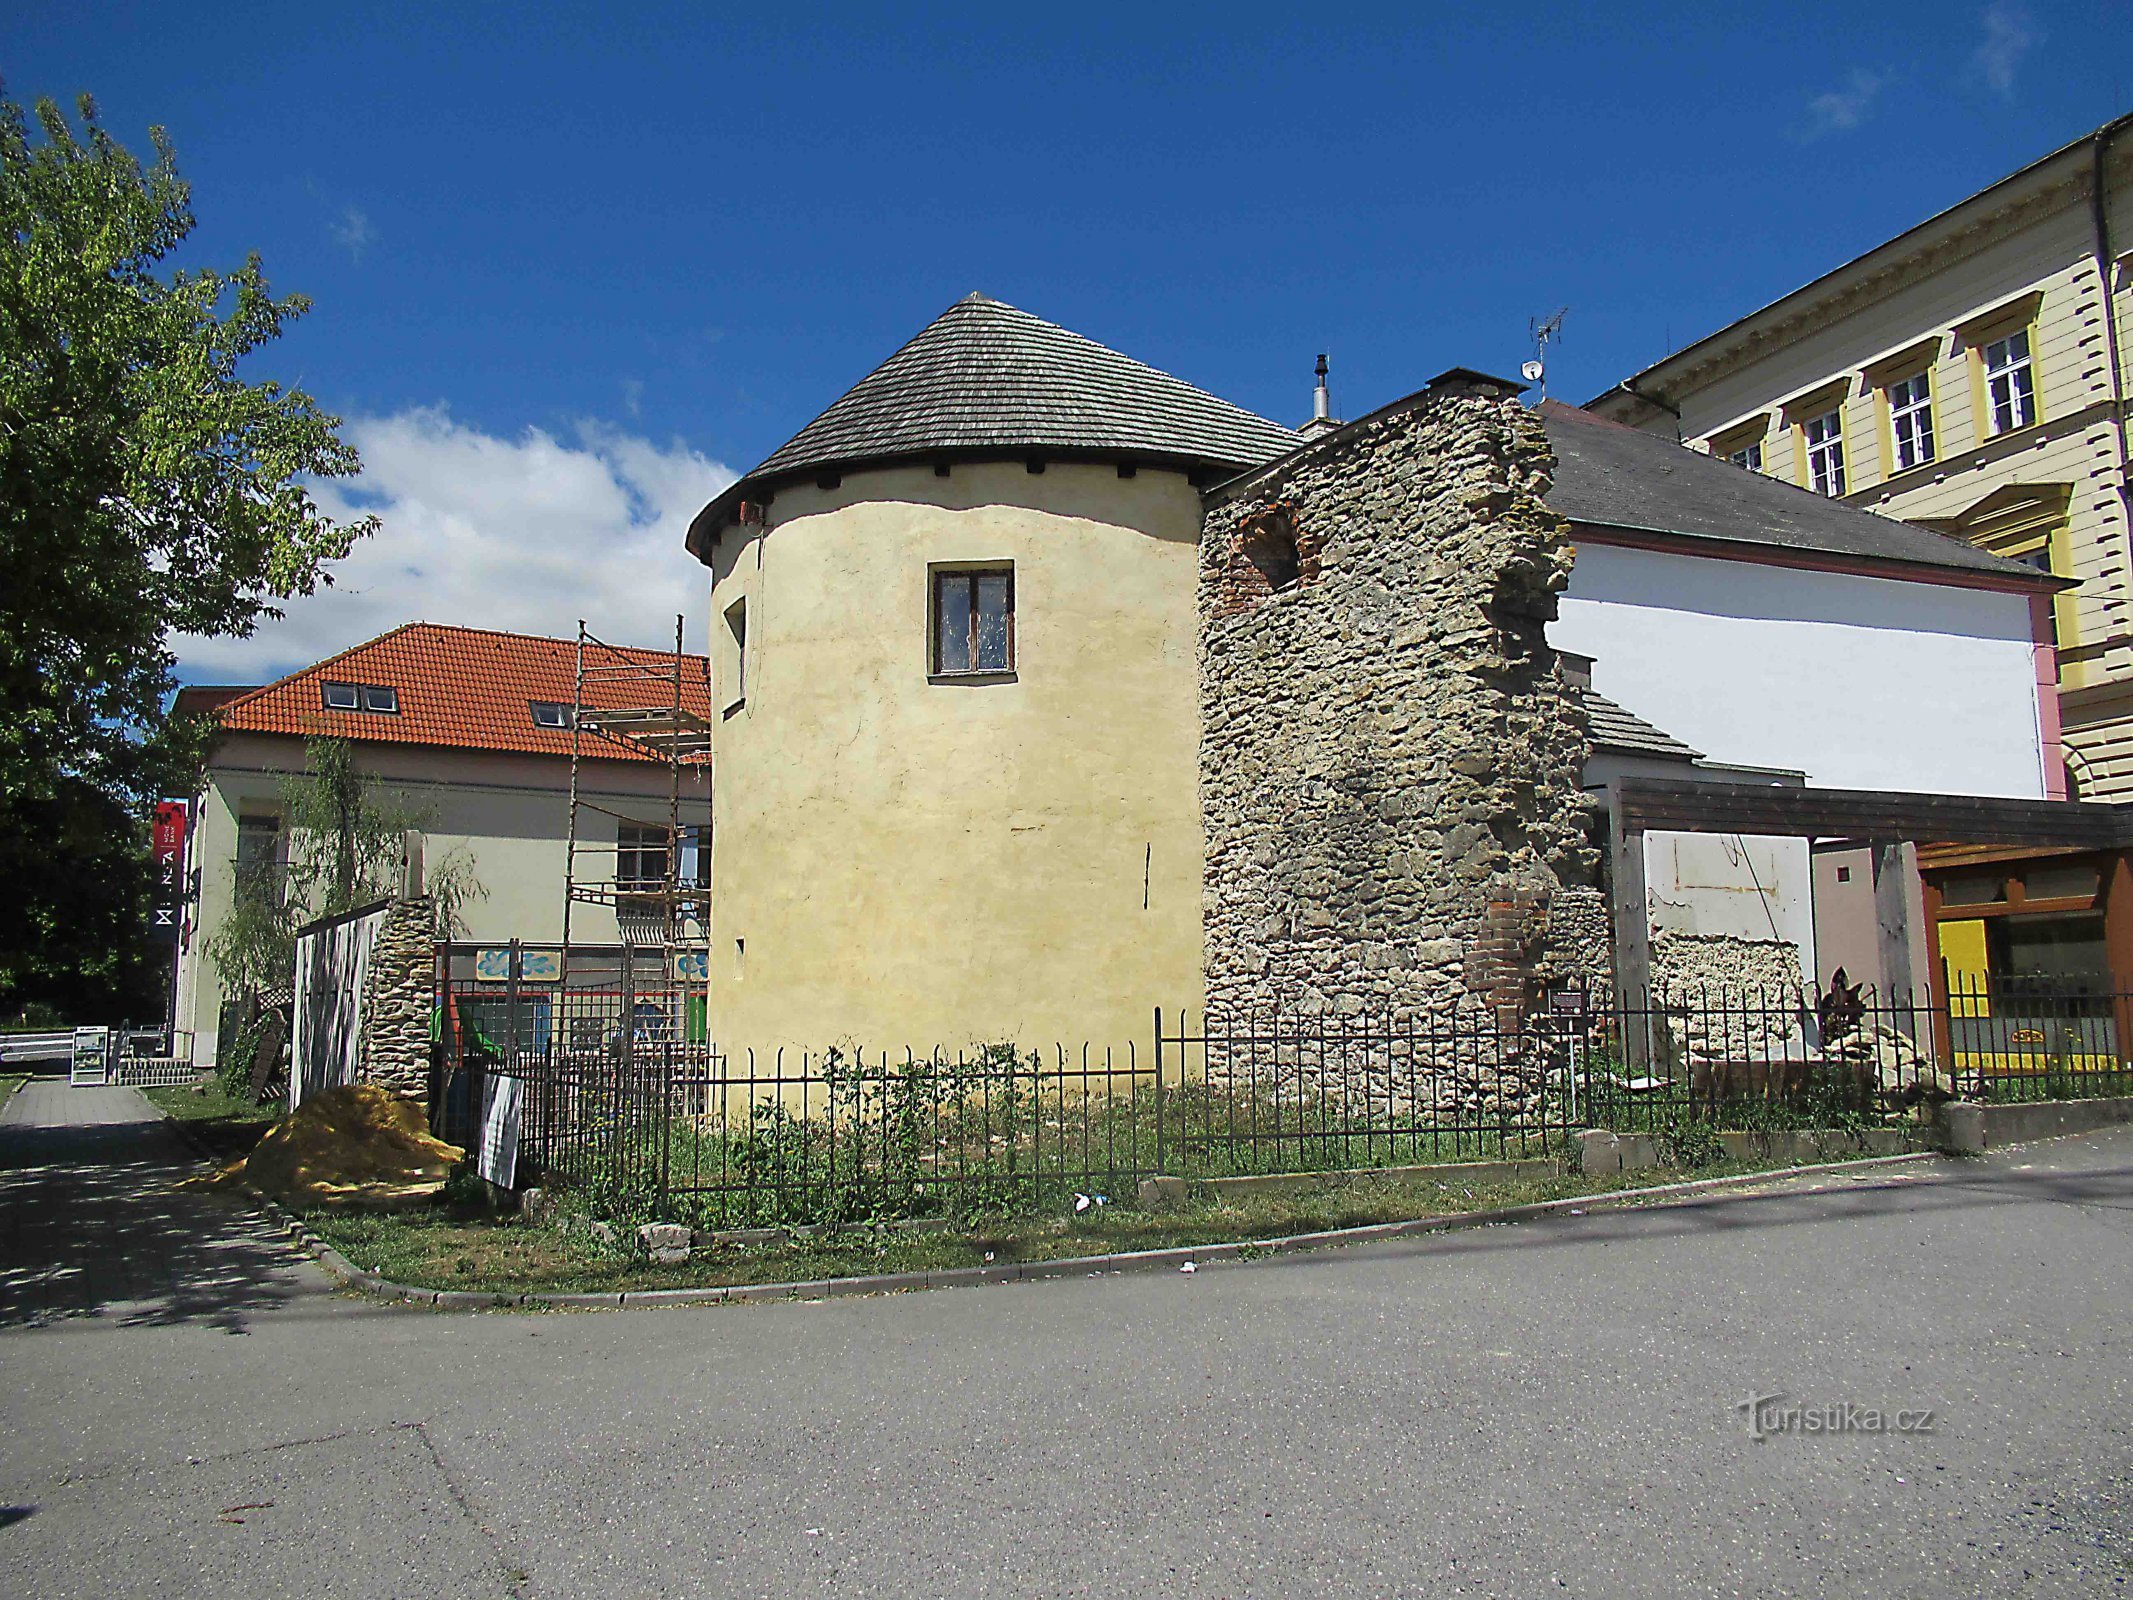 Svitavy の都市要塞の遺跡